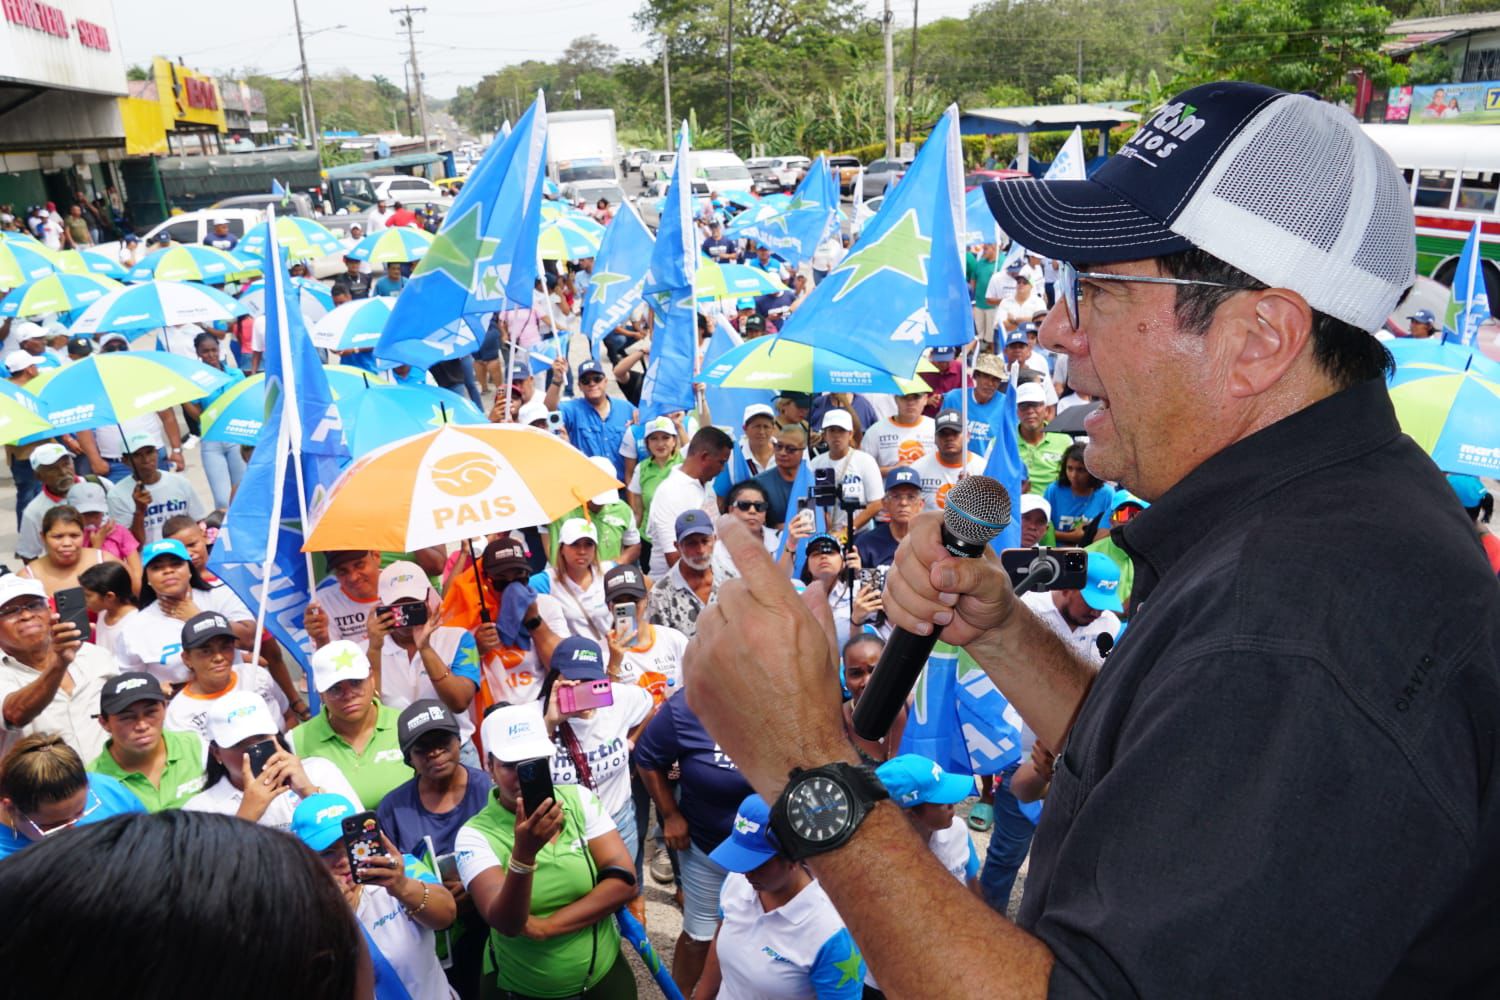 Invertir y crear más empleos en Colón, promete Martín Torrijos